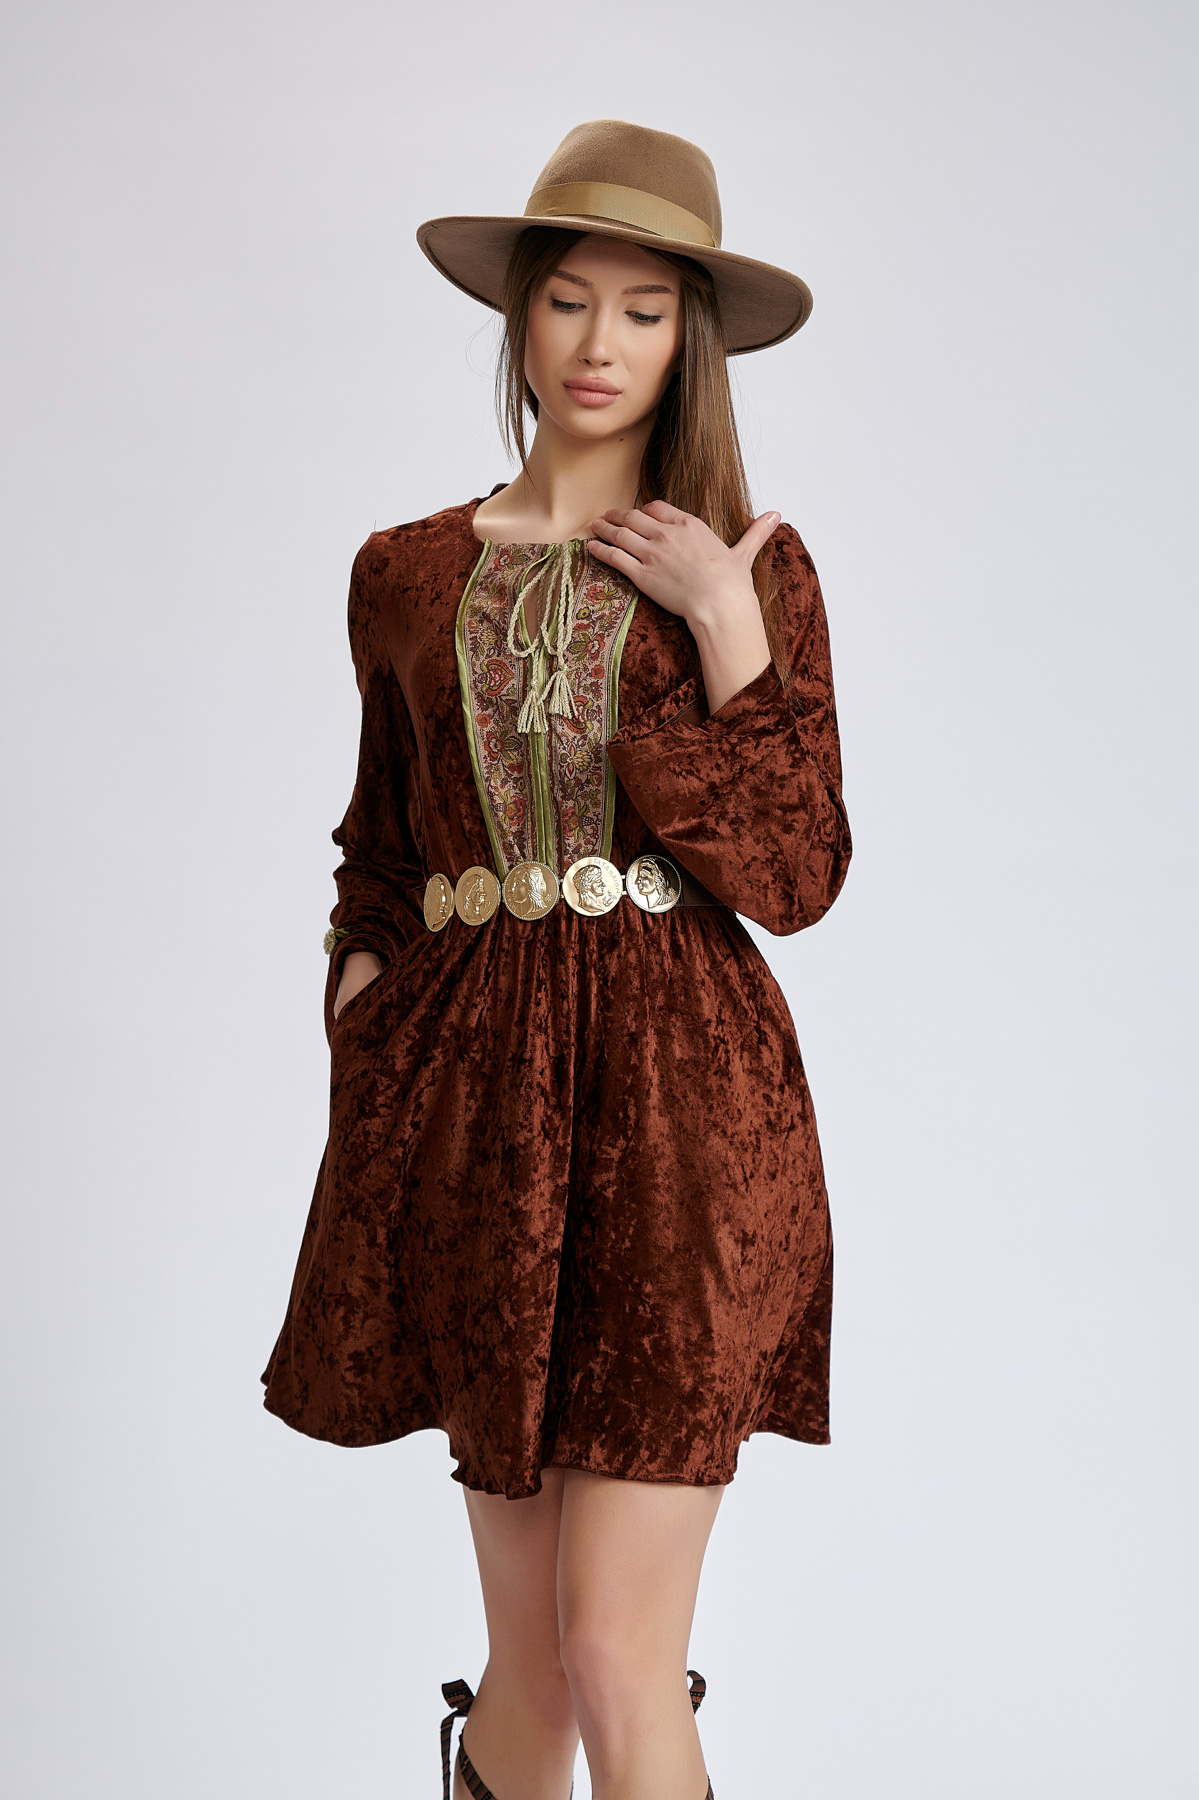 Dress Lucy. Natural fabrics, original design, handmade embroidery